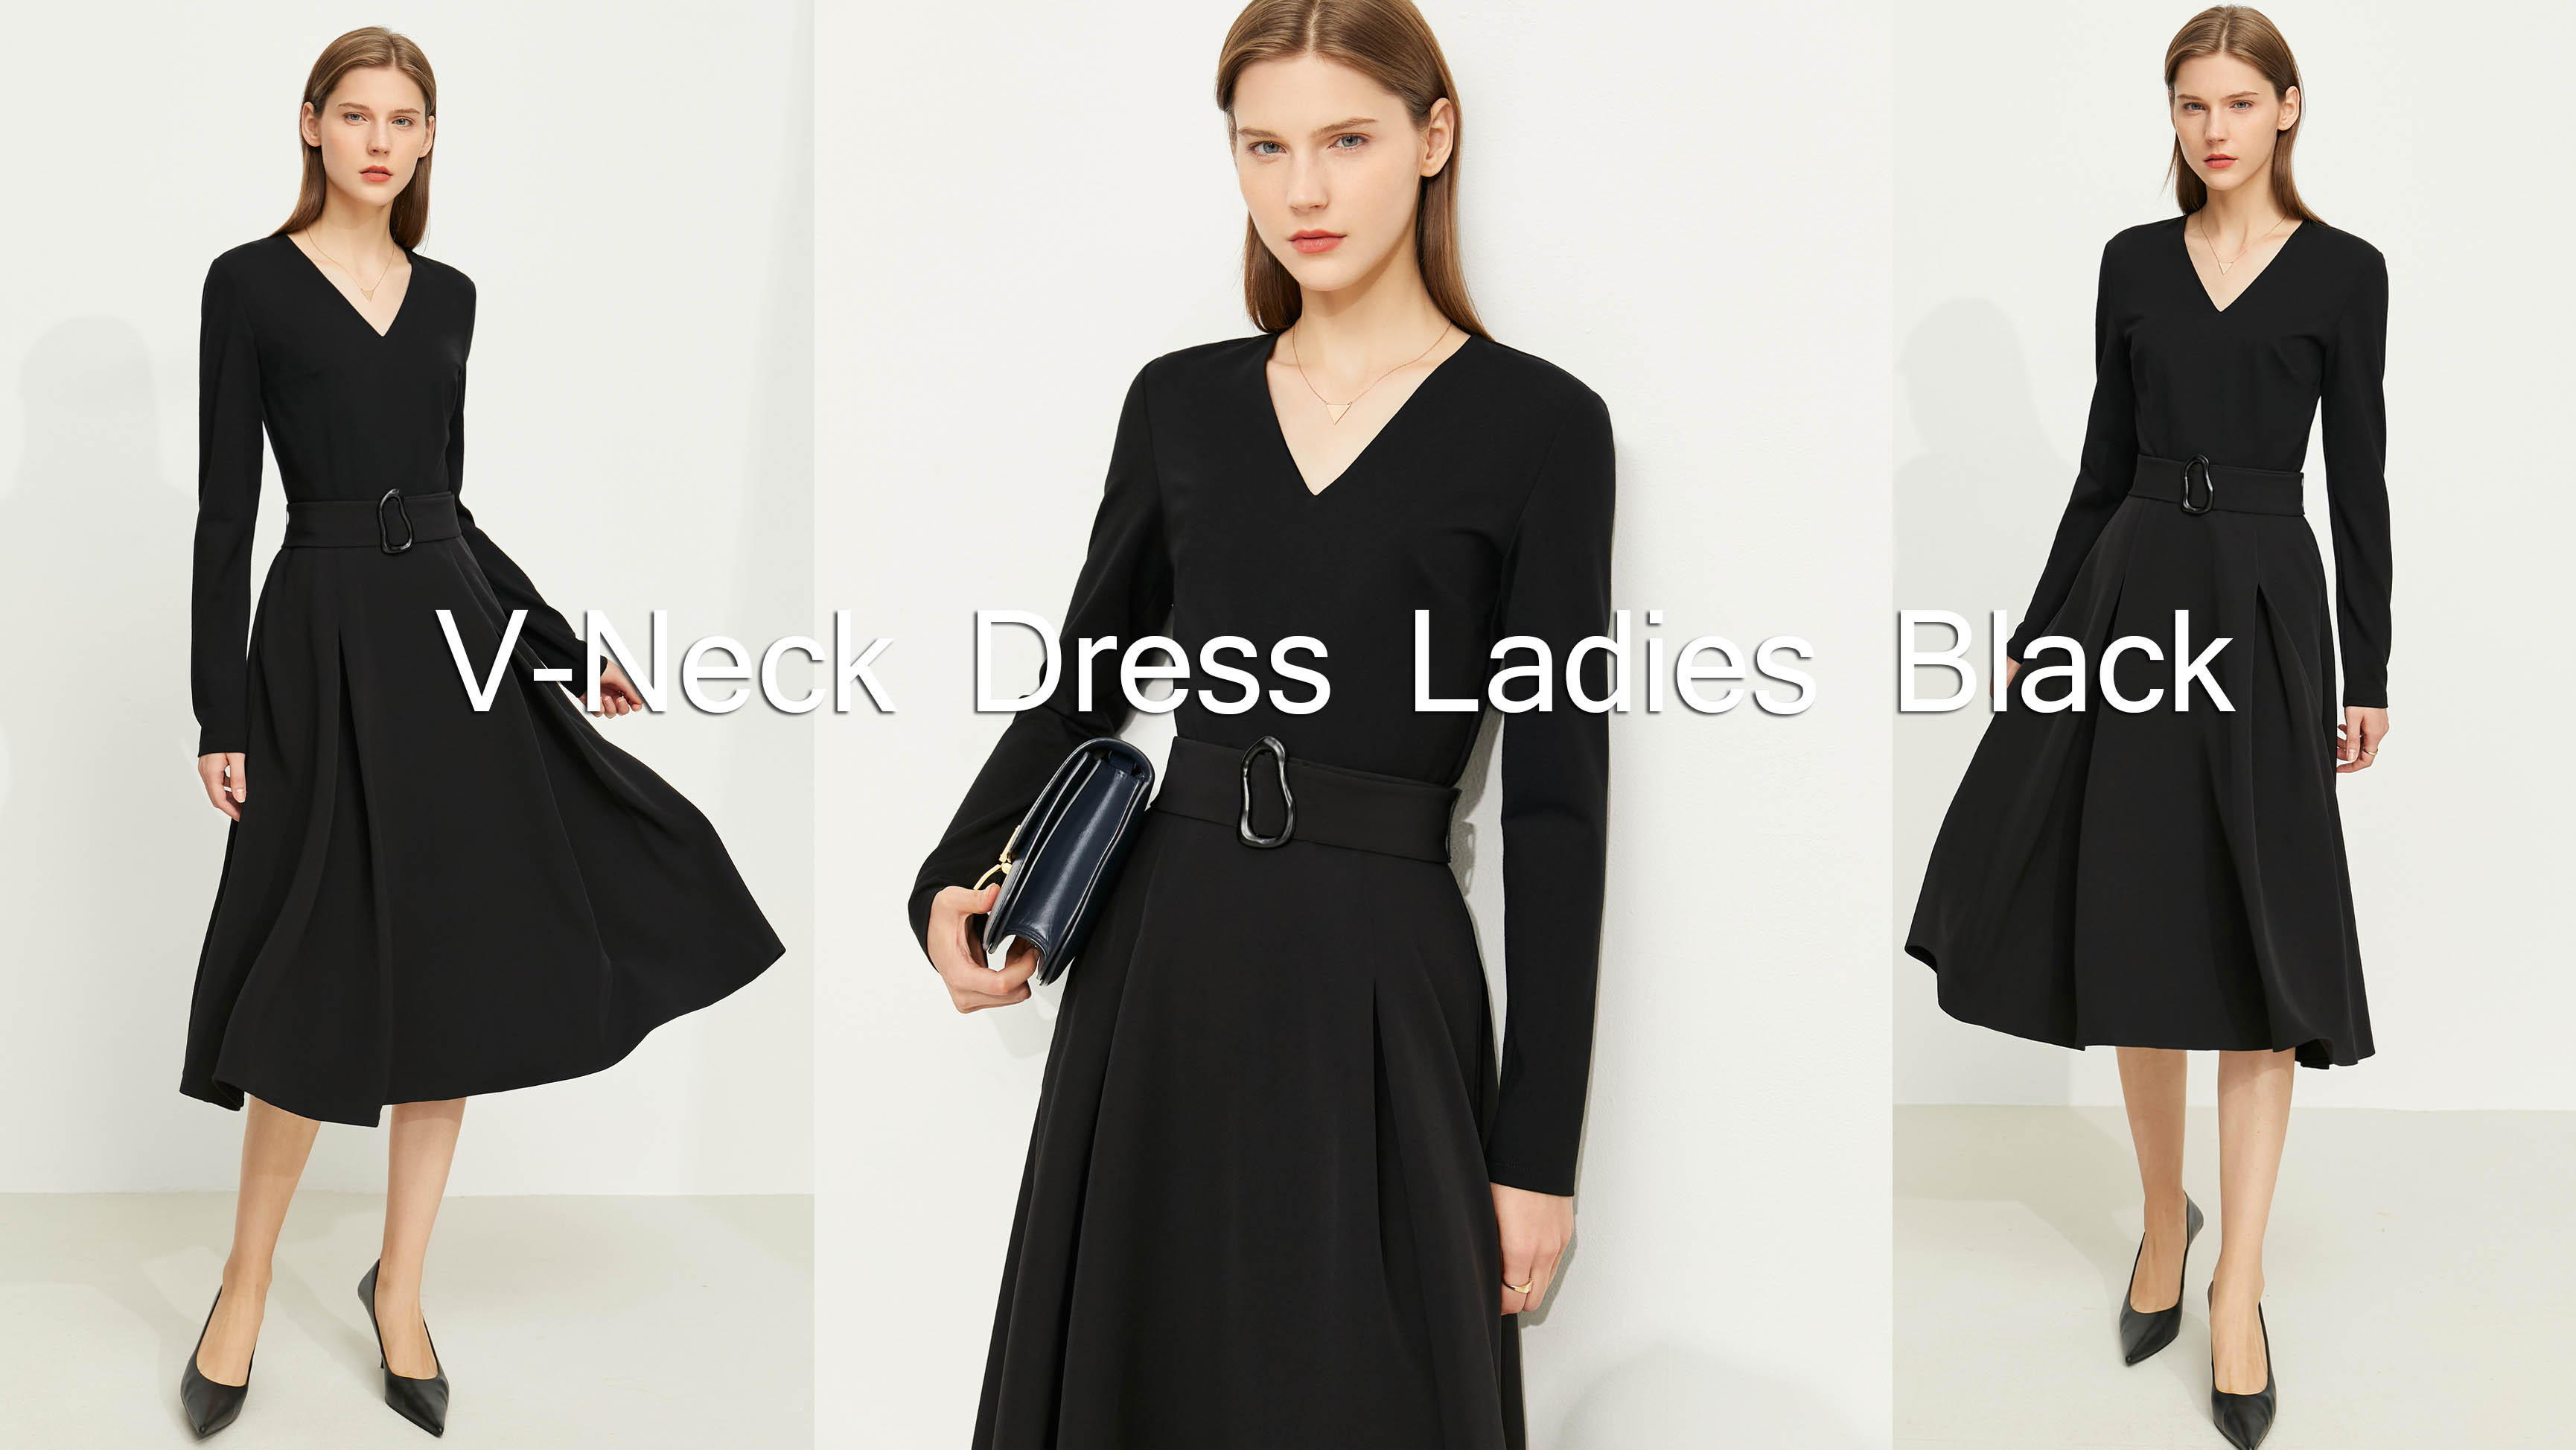 جودة فستان على شكل حرف V للسيدات باللون الأسود |أوشالينك